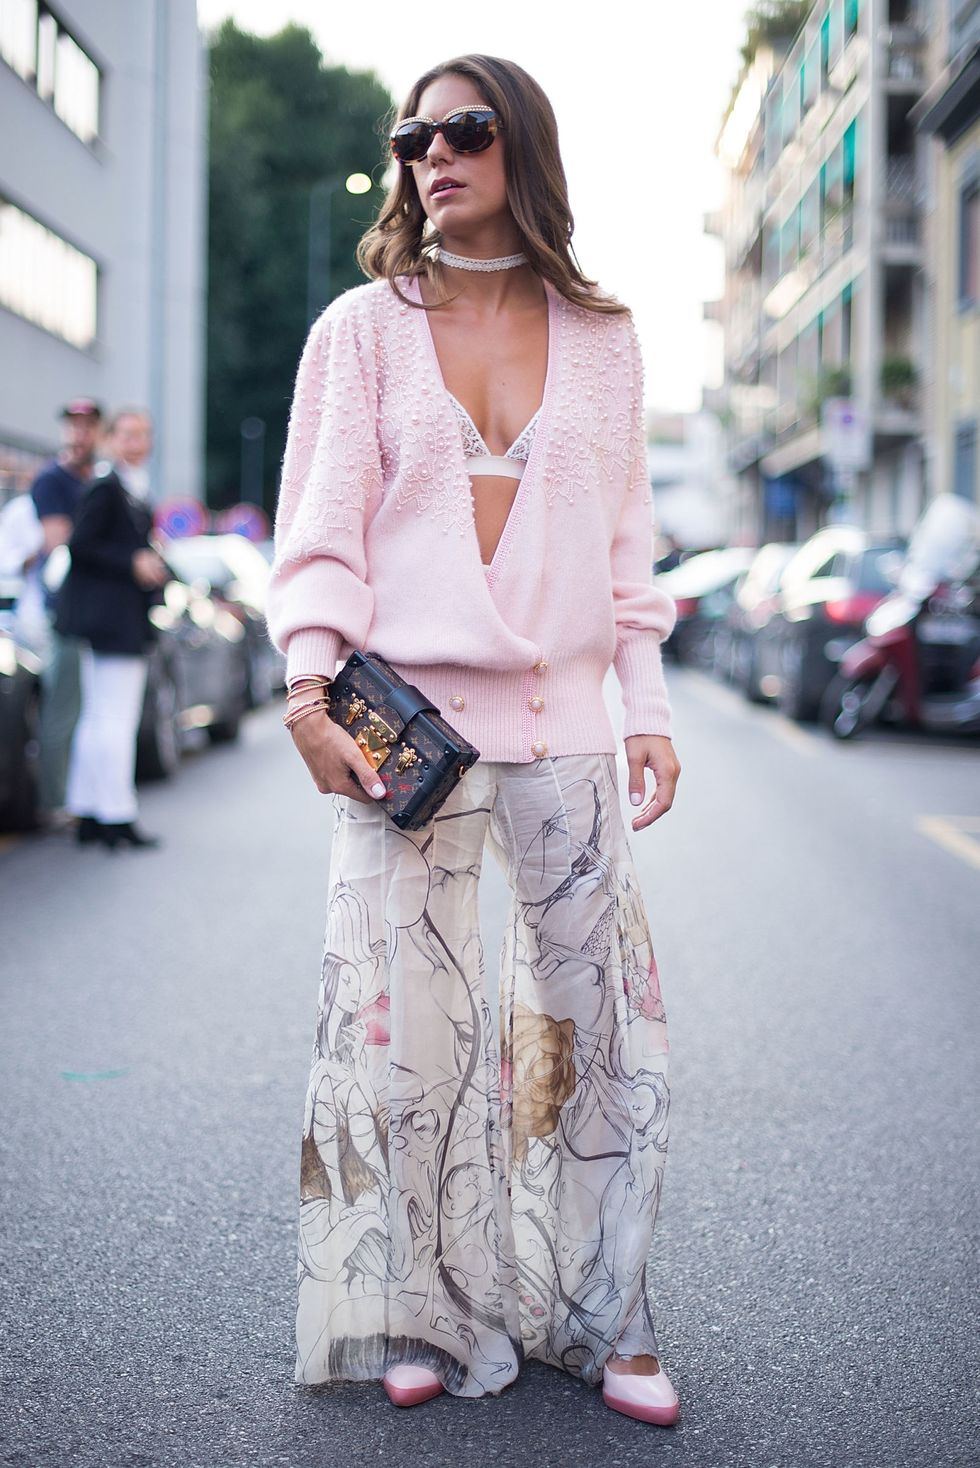 come indossare il reggiseno per le fashion blogger